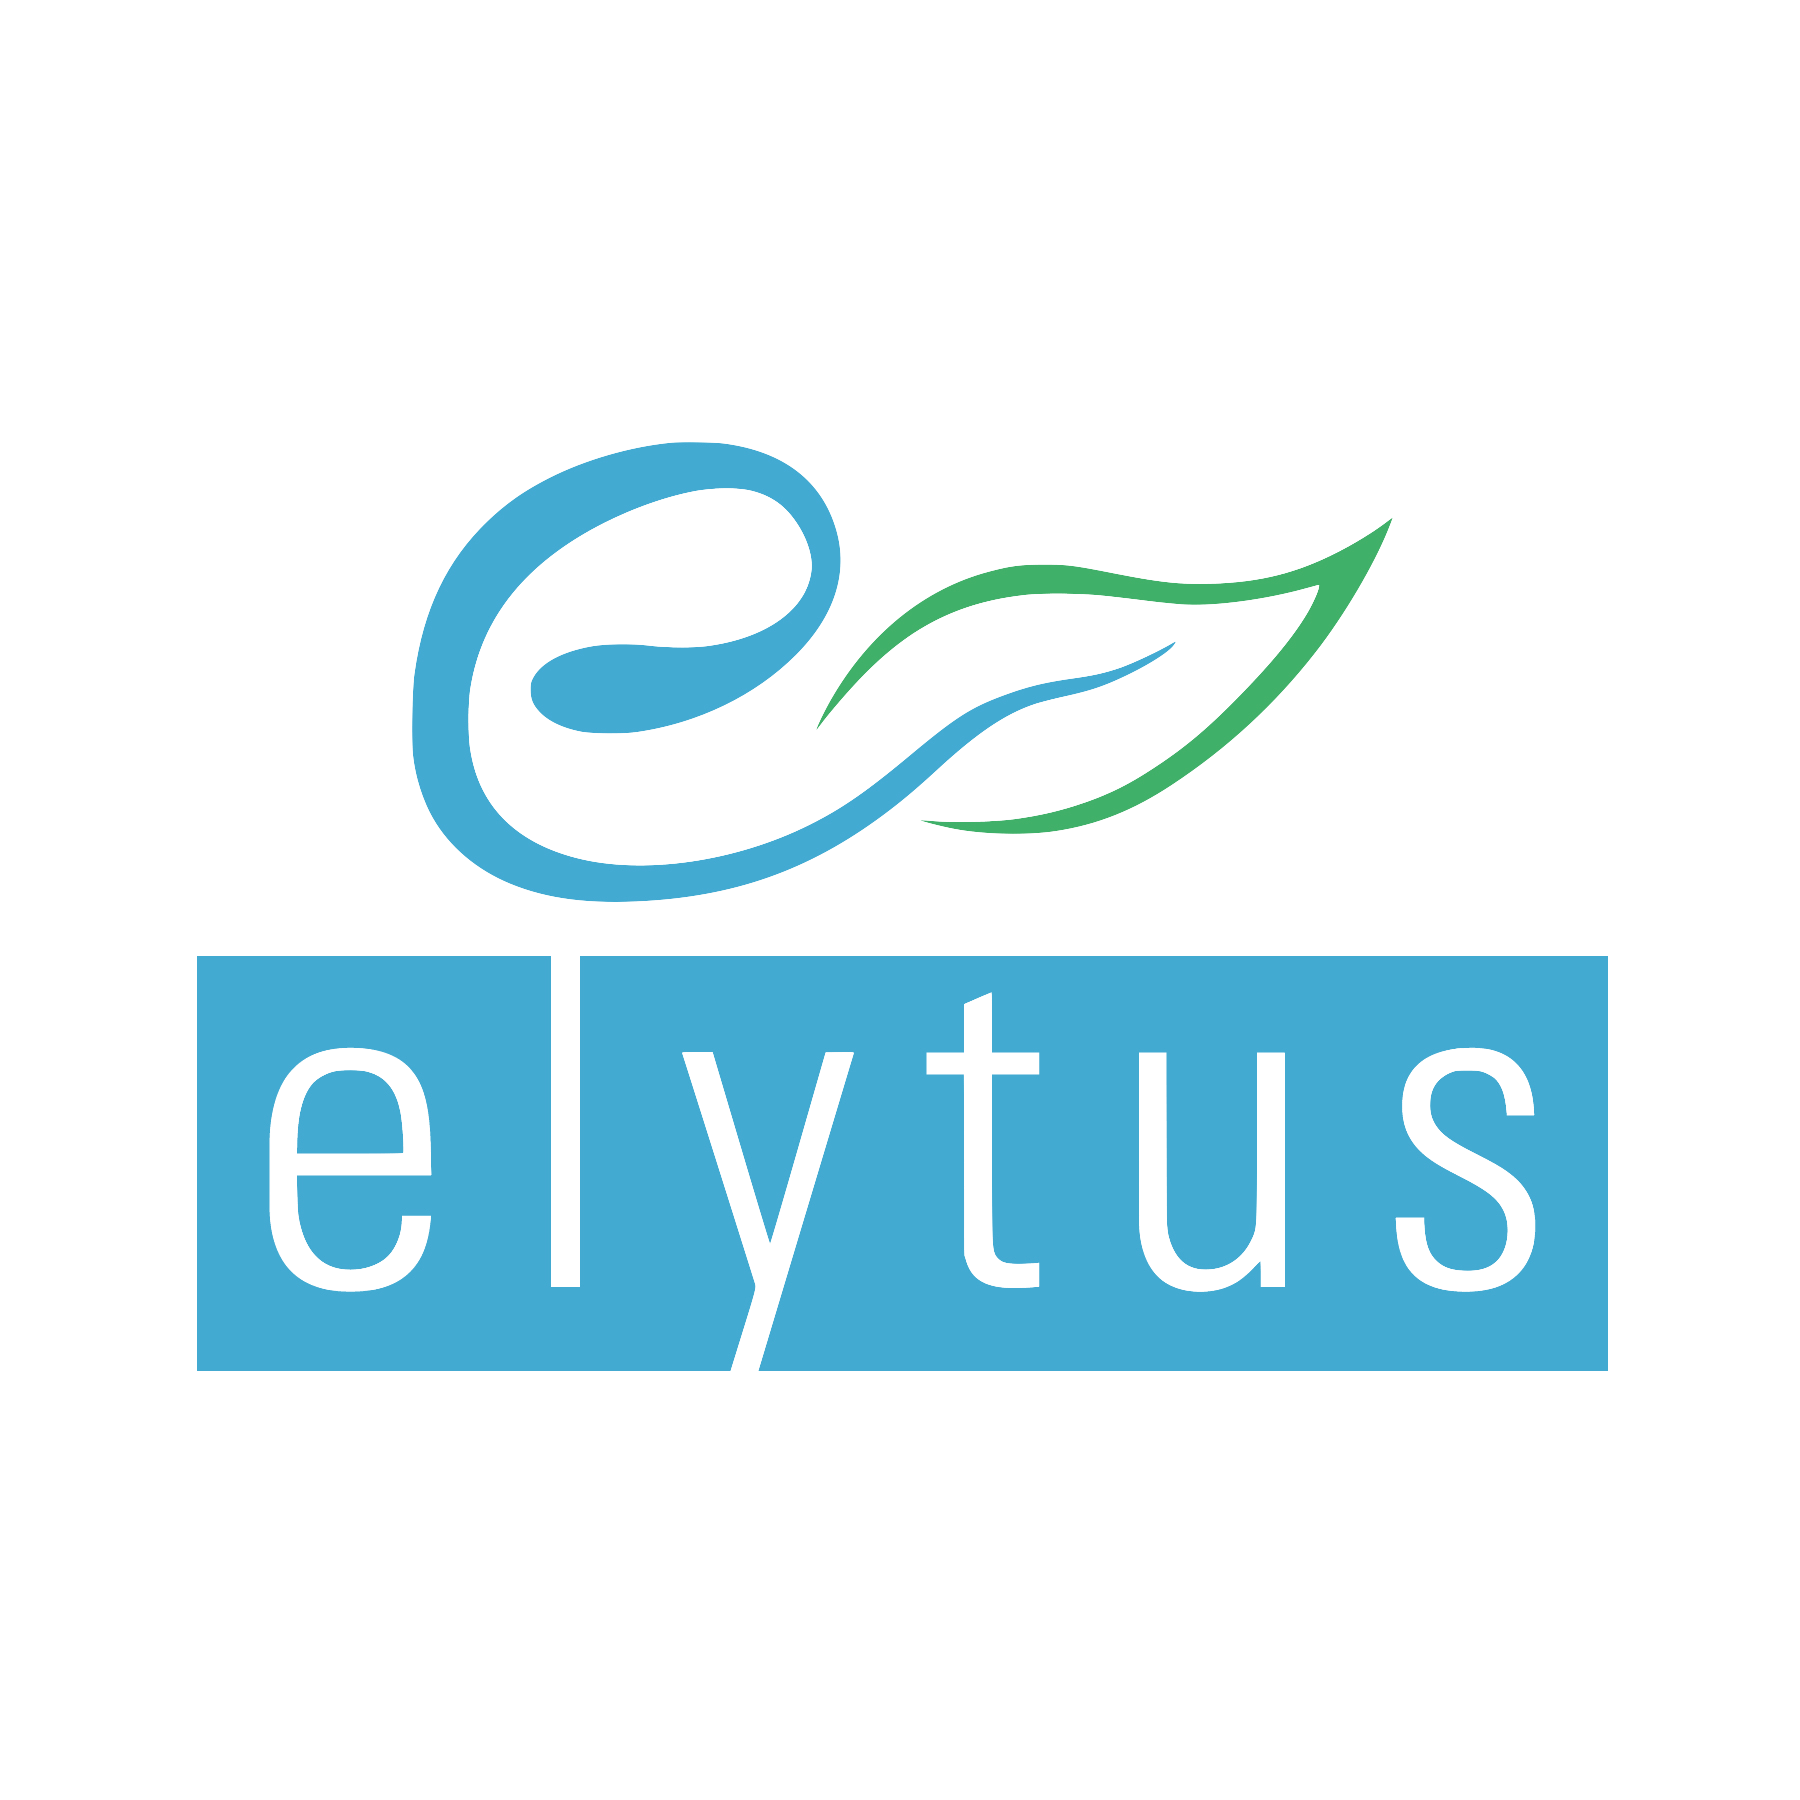 elytus